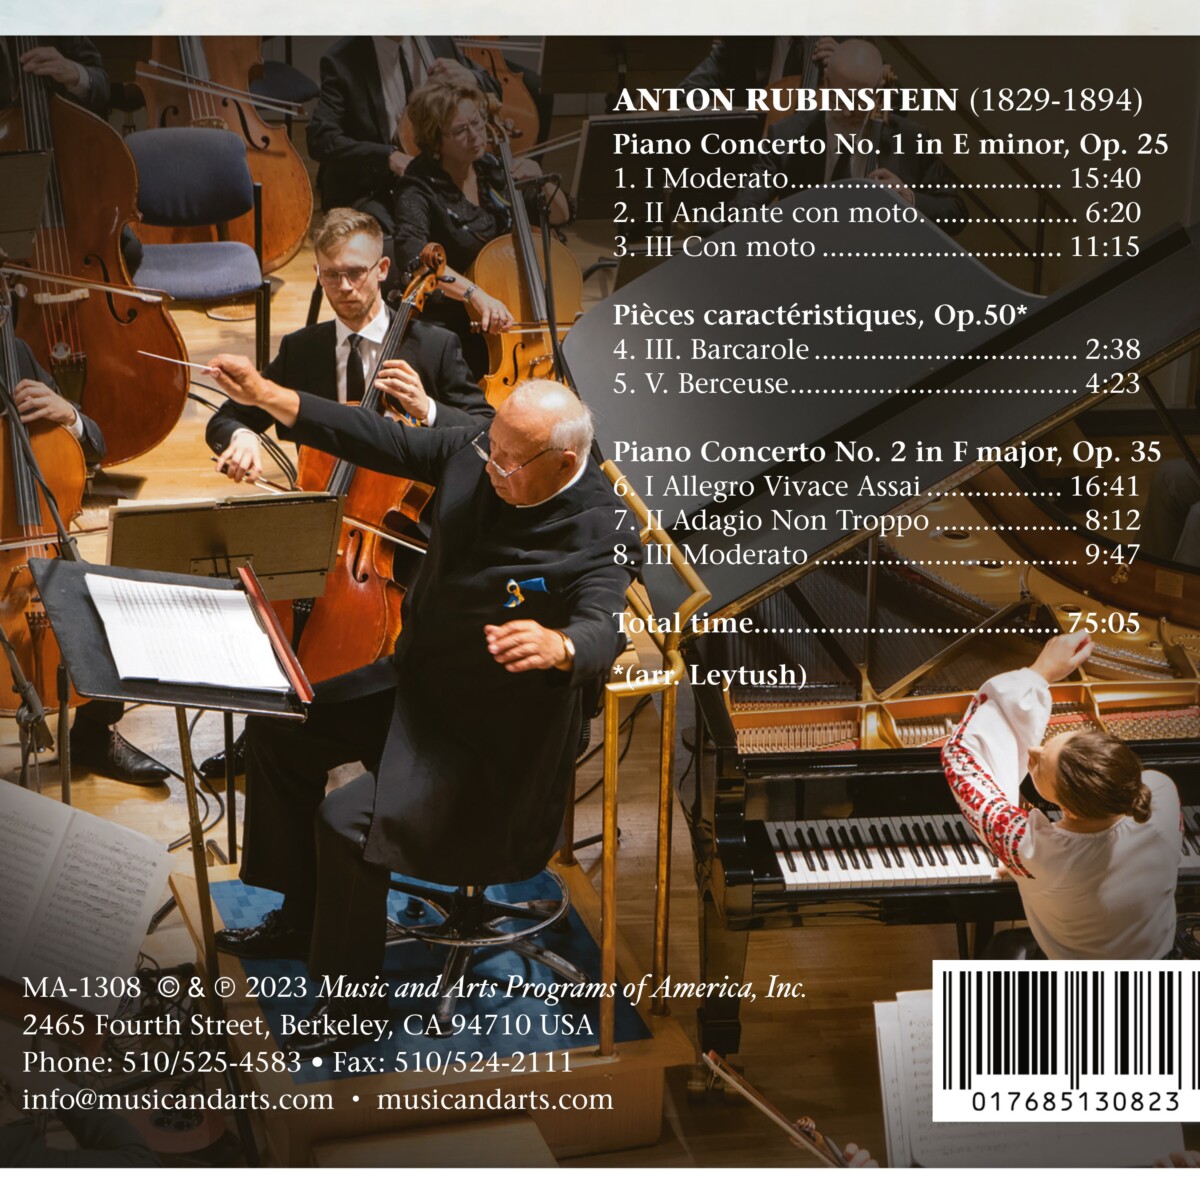 Anton Rubinstein: Piano Concertos Nos. 1 & 2, Pièces